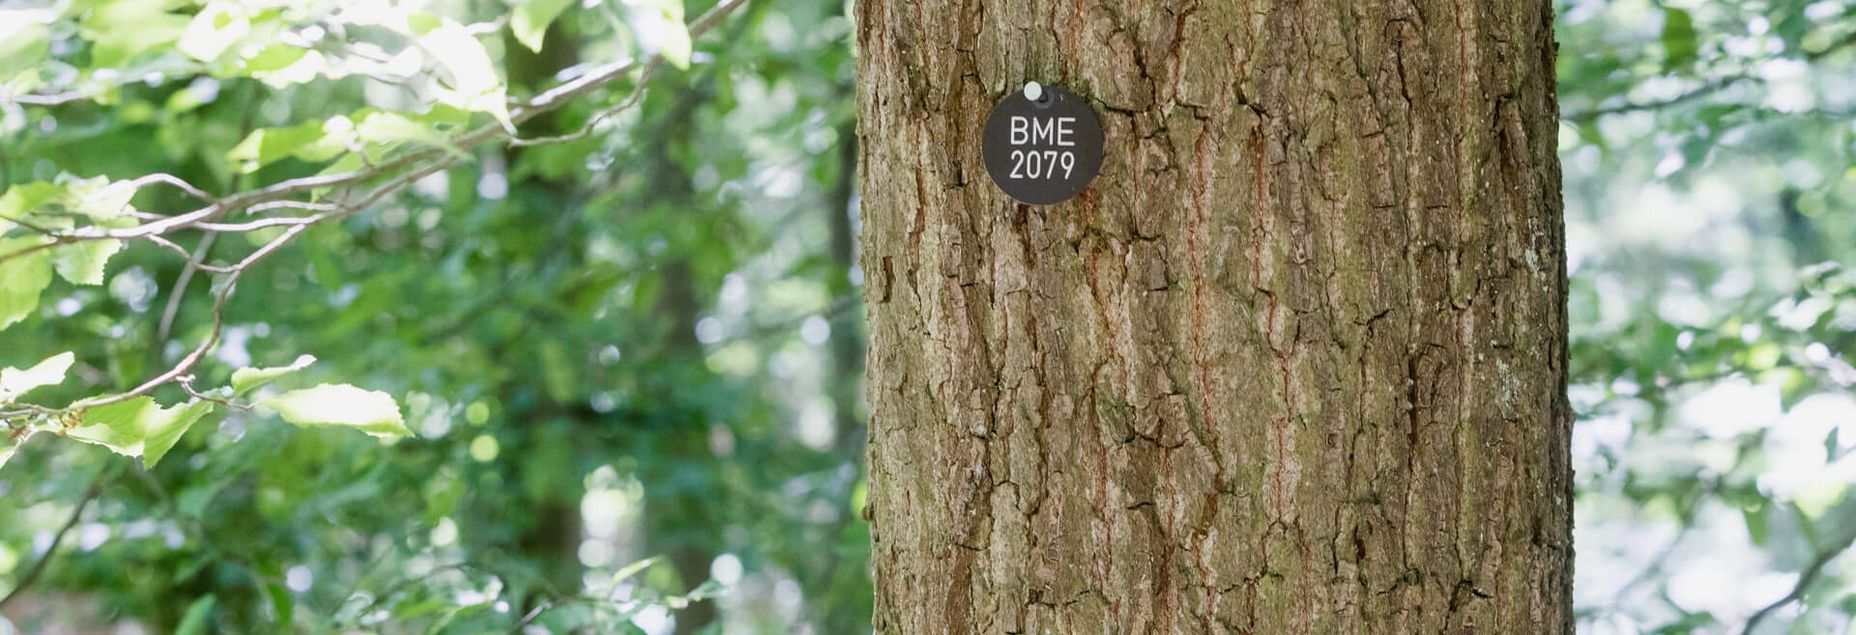 Baum BME 2079 - Plakette